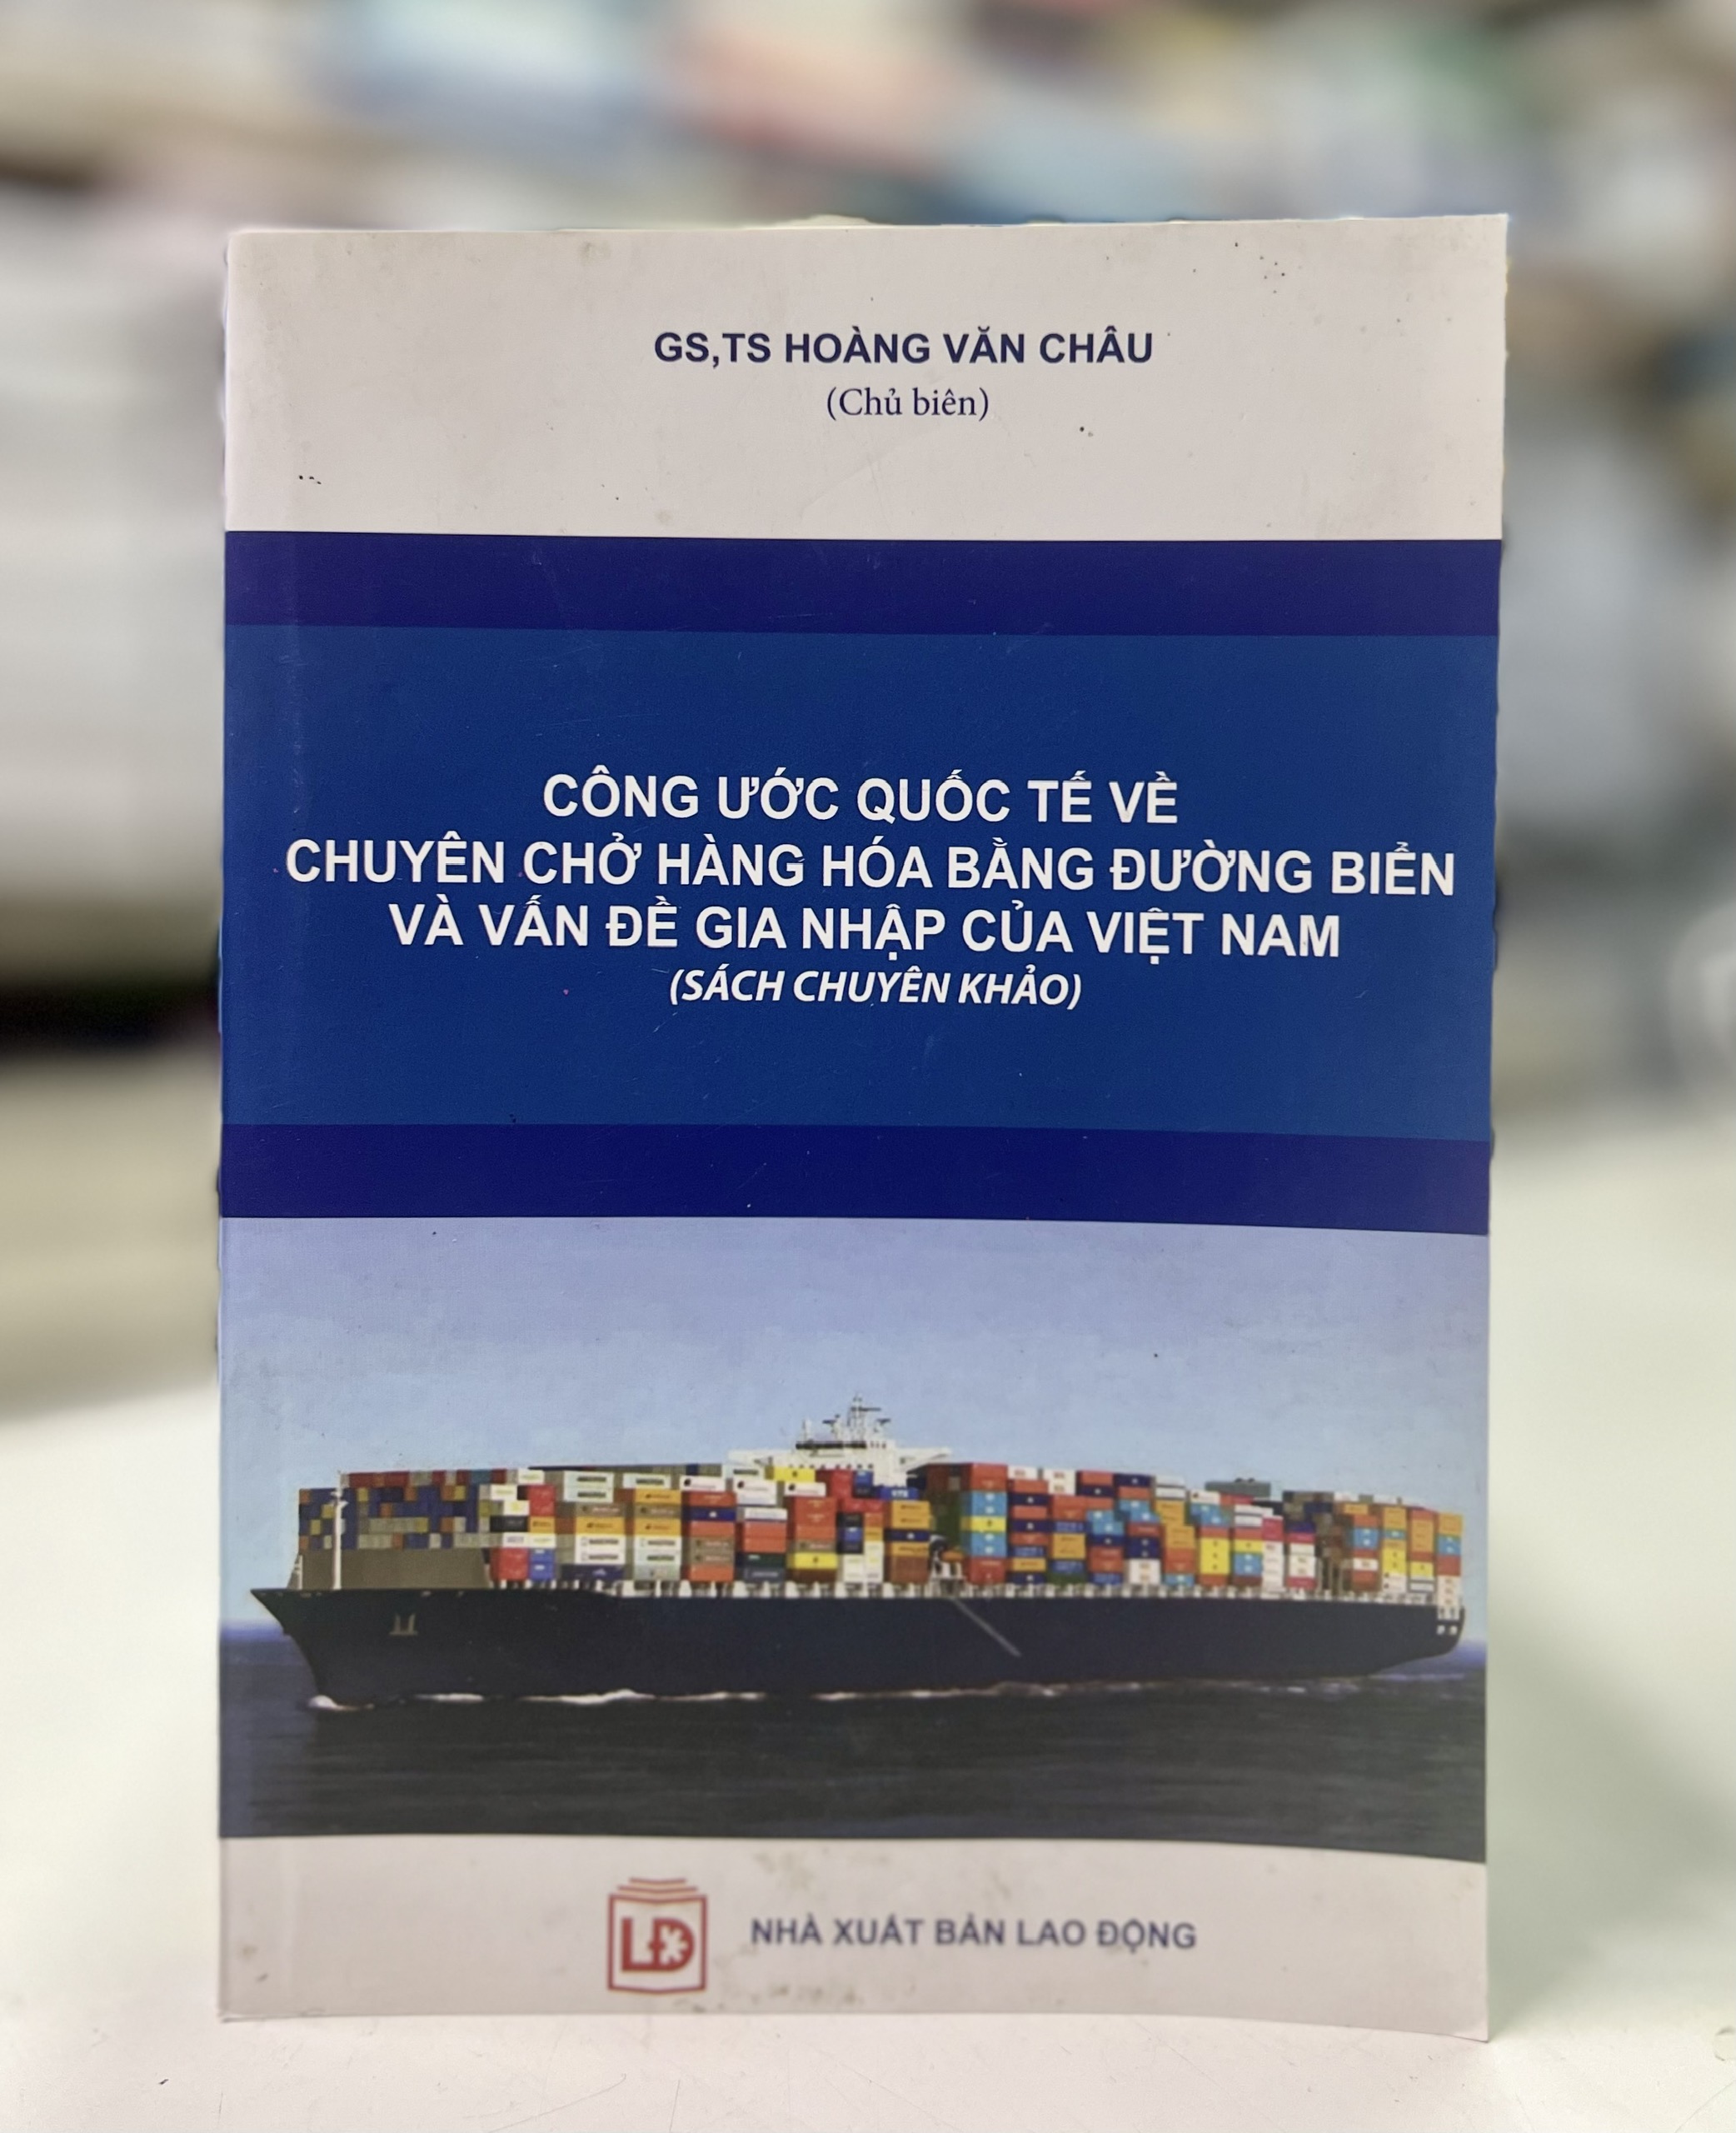 Công ước quốc tế về chuyên chở hàng hóa bằng đường biển và vấn đề gia nhập củaViệt Nam (Sách chuyên khảo)